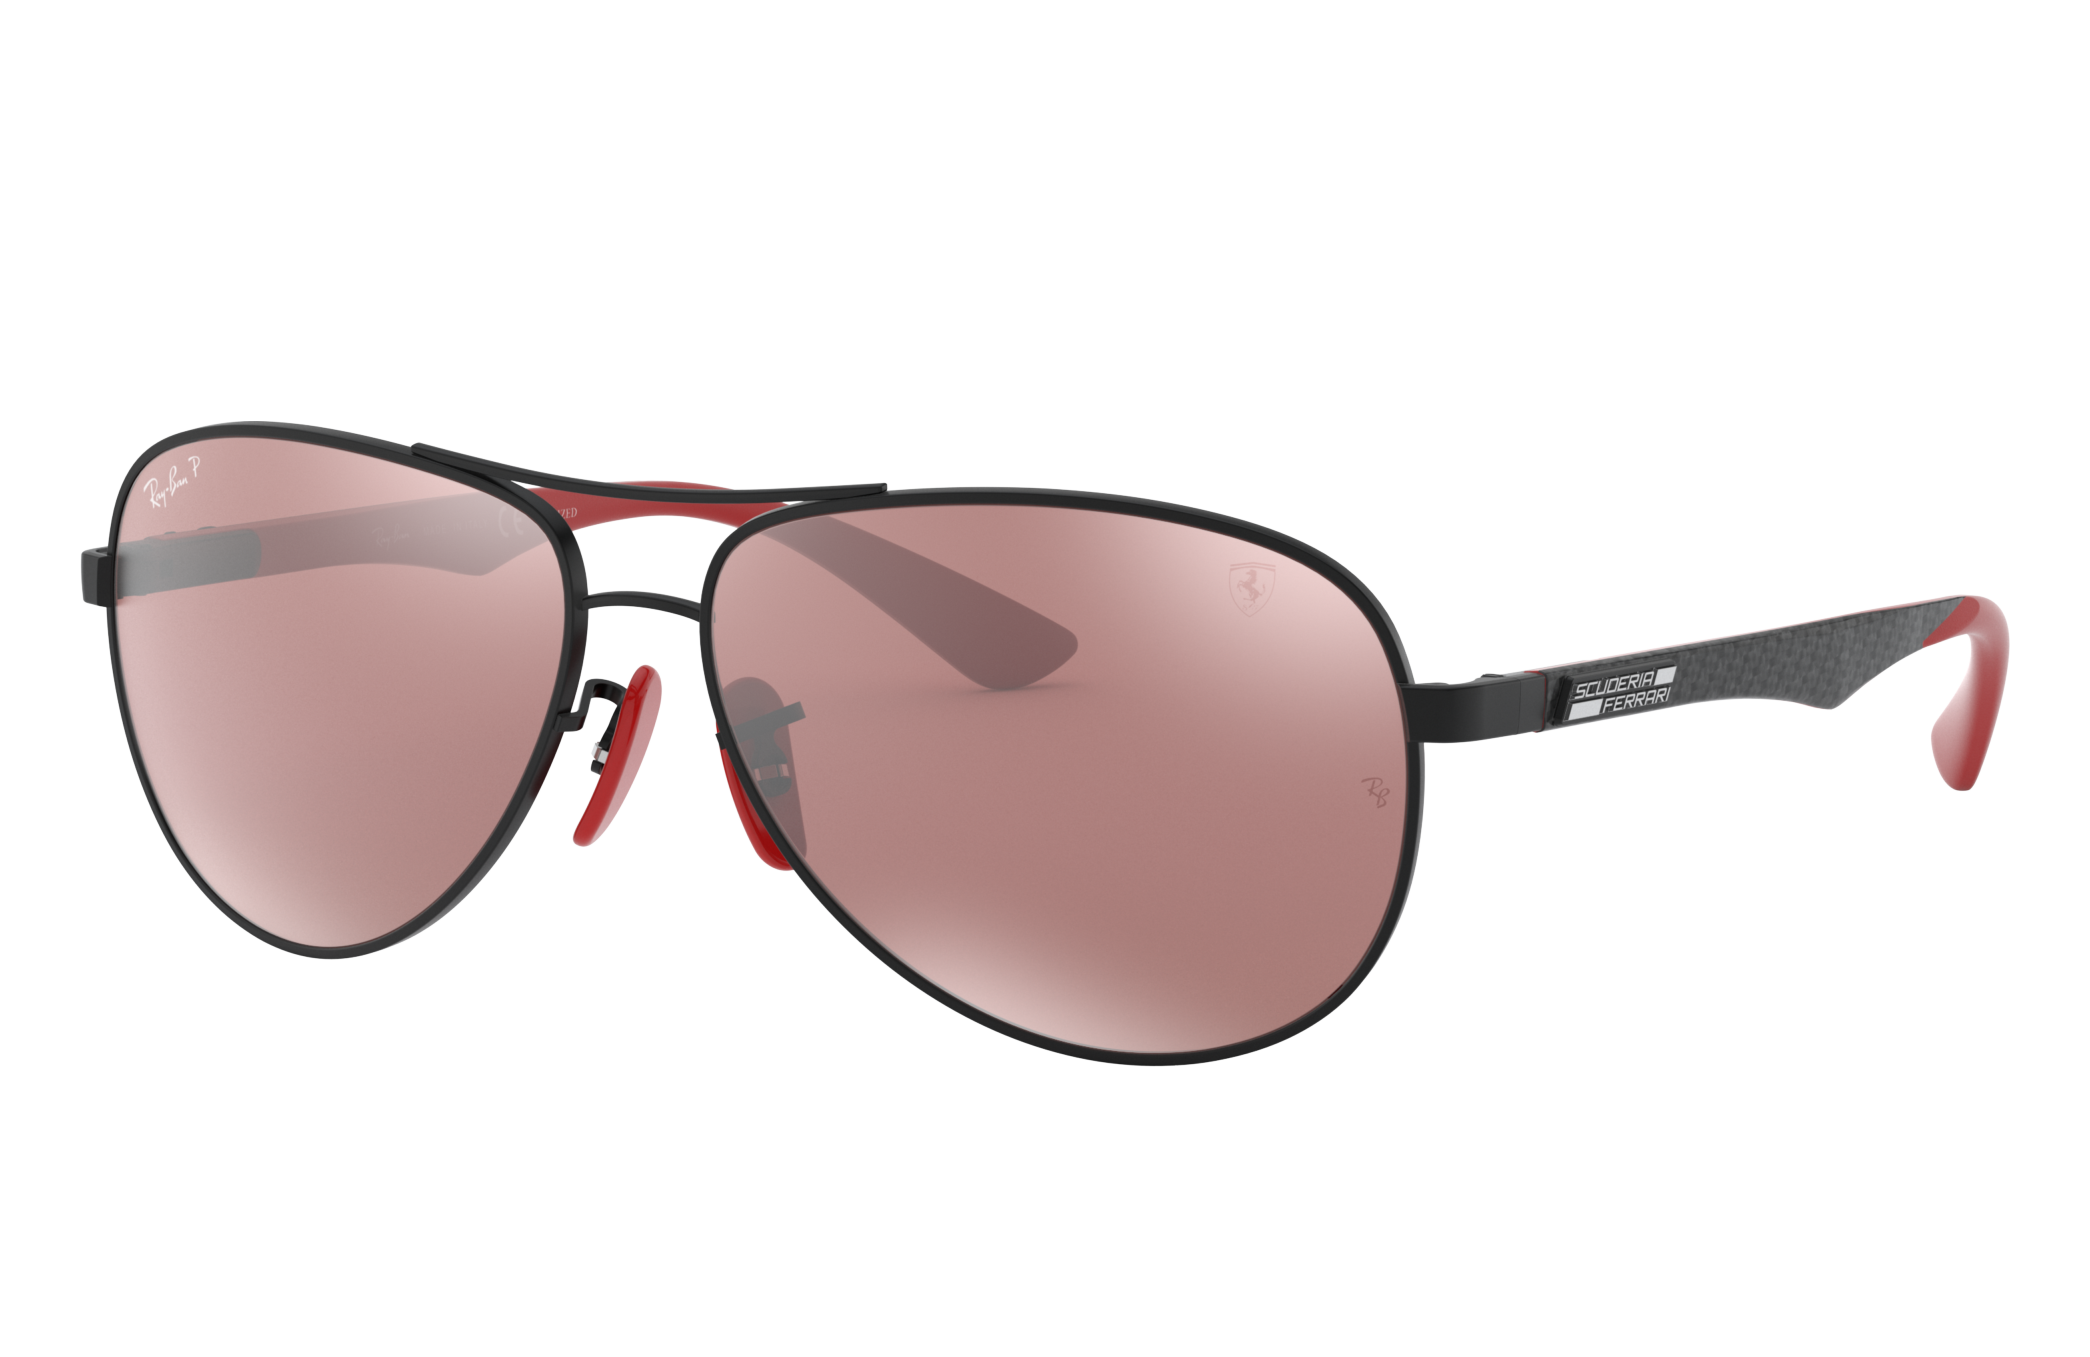 Rb8313m Scuderia Ferrari Collection Sunglasses in Black and Silver | Ray-Ban ®